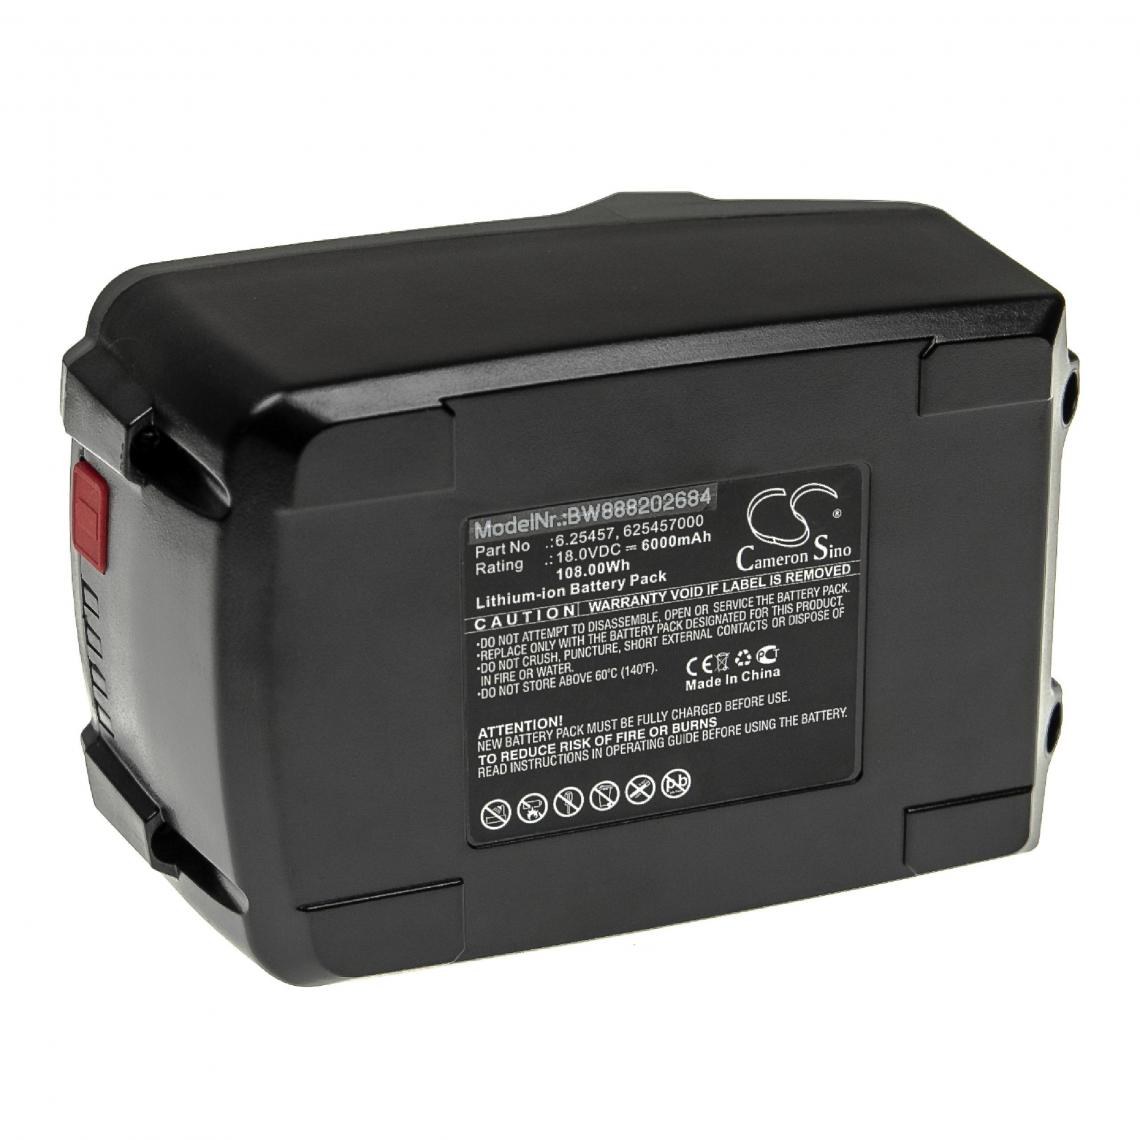 Vhbw - vhbw Batterie compatible avec Metabo BS 18 LT BL Q, BS 18 LT BL Q 602334550 outil électrique (6000mAh Li-ion 18 V) - Autre appareil de mesure